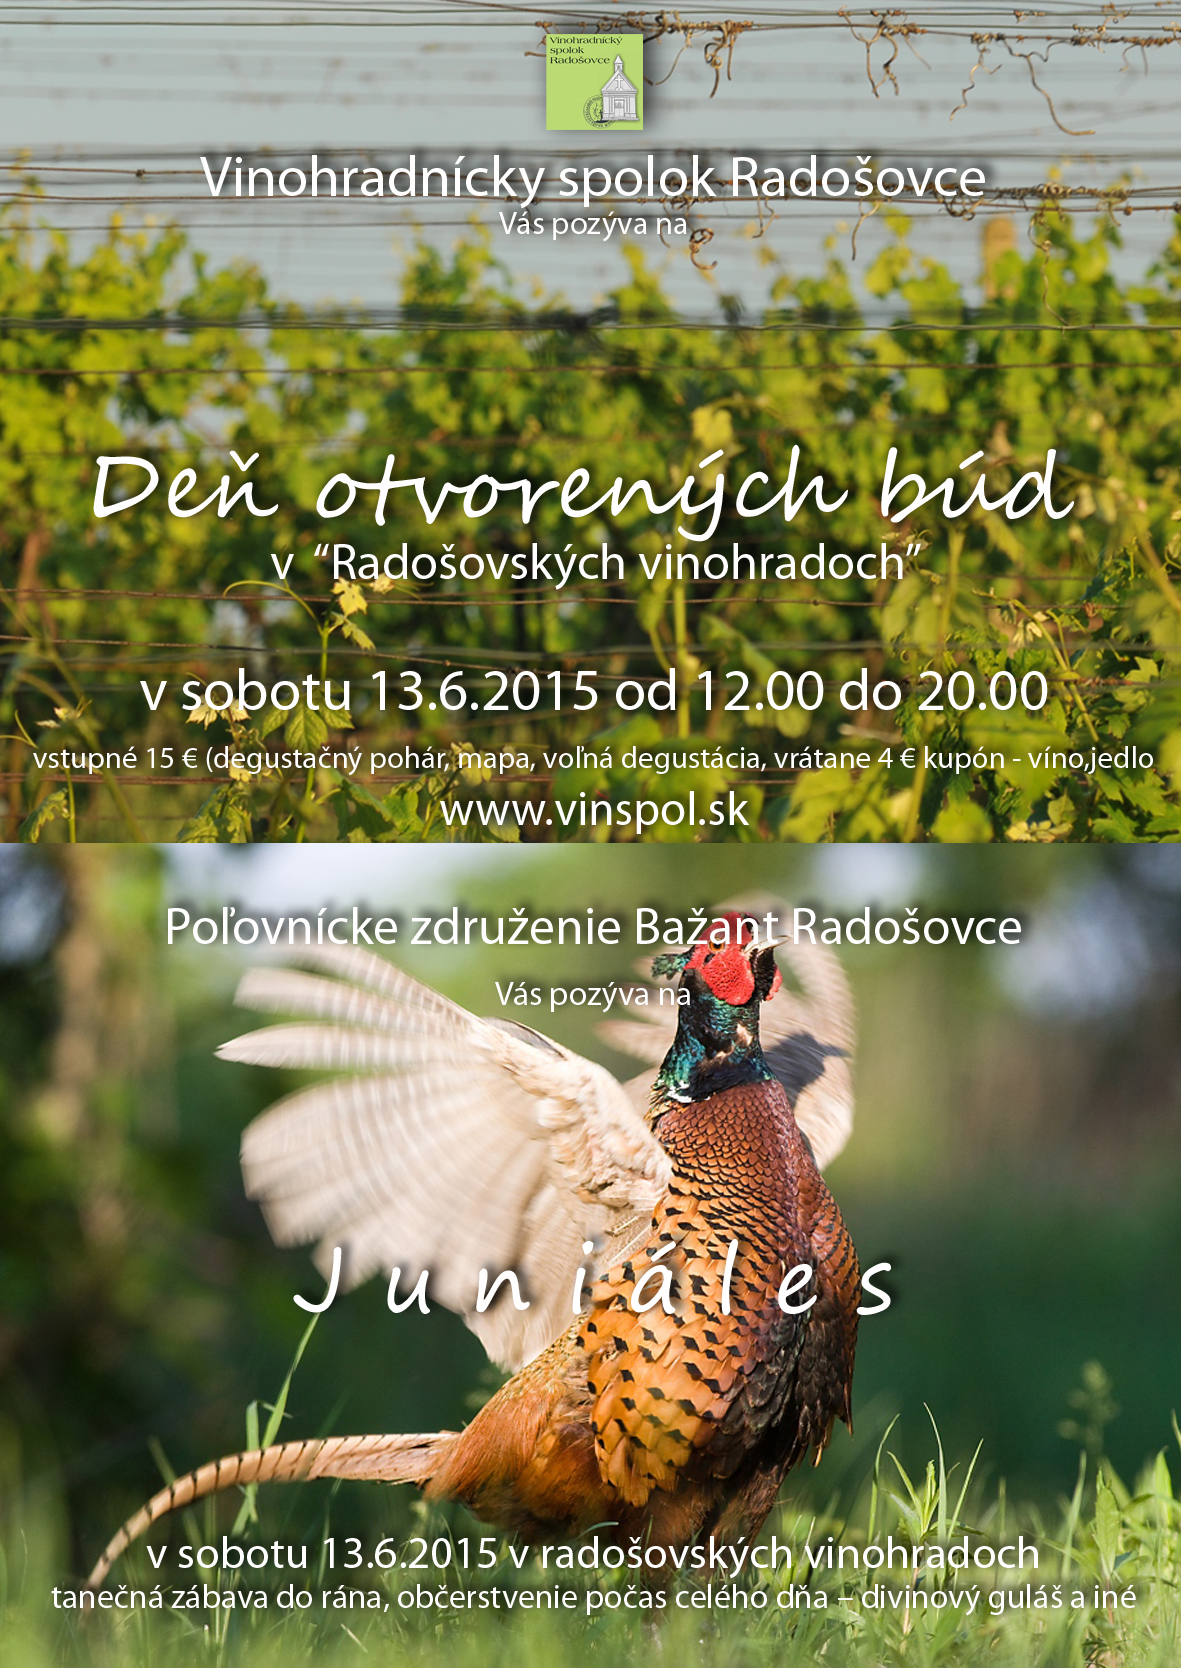 De otvorench bd v Radoovskch vinohradoch 2015 - 3. ronk